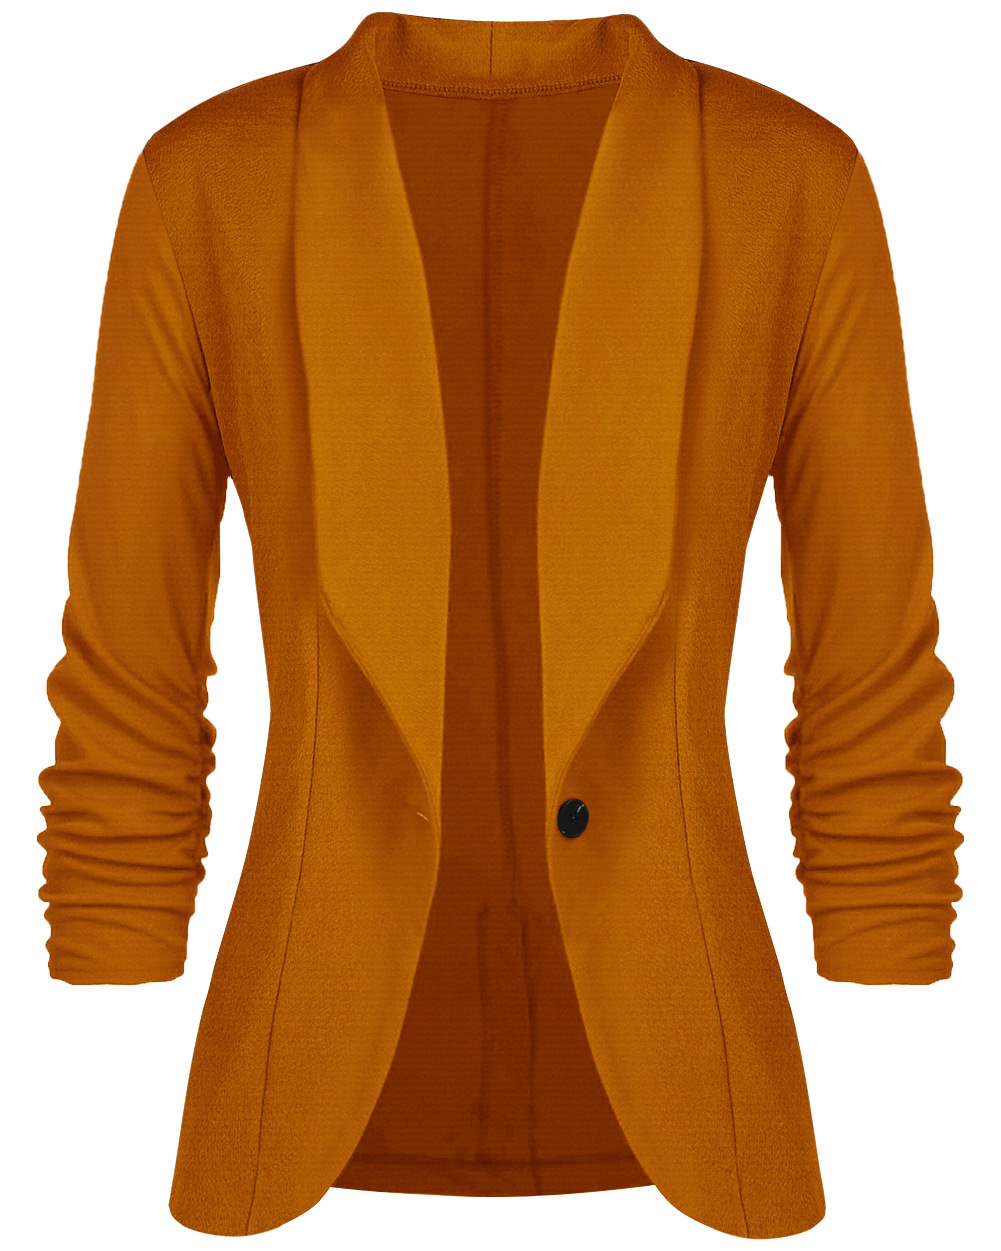 Women Slim Suit Coat 3/4 Sleeve One Button Casual Office Business Blazer Jacket Outwear Earthy Yellow